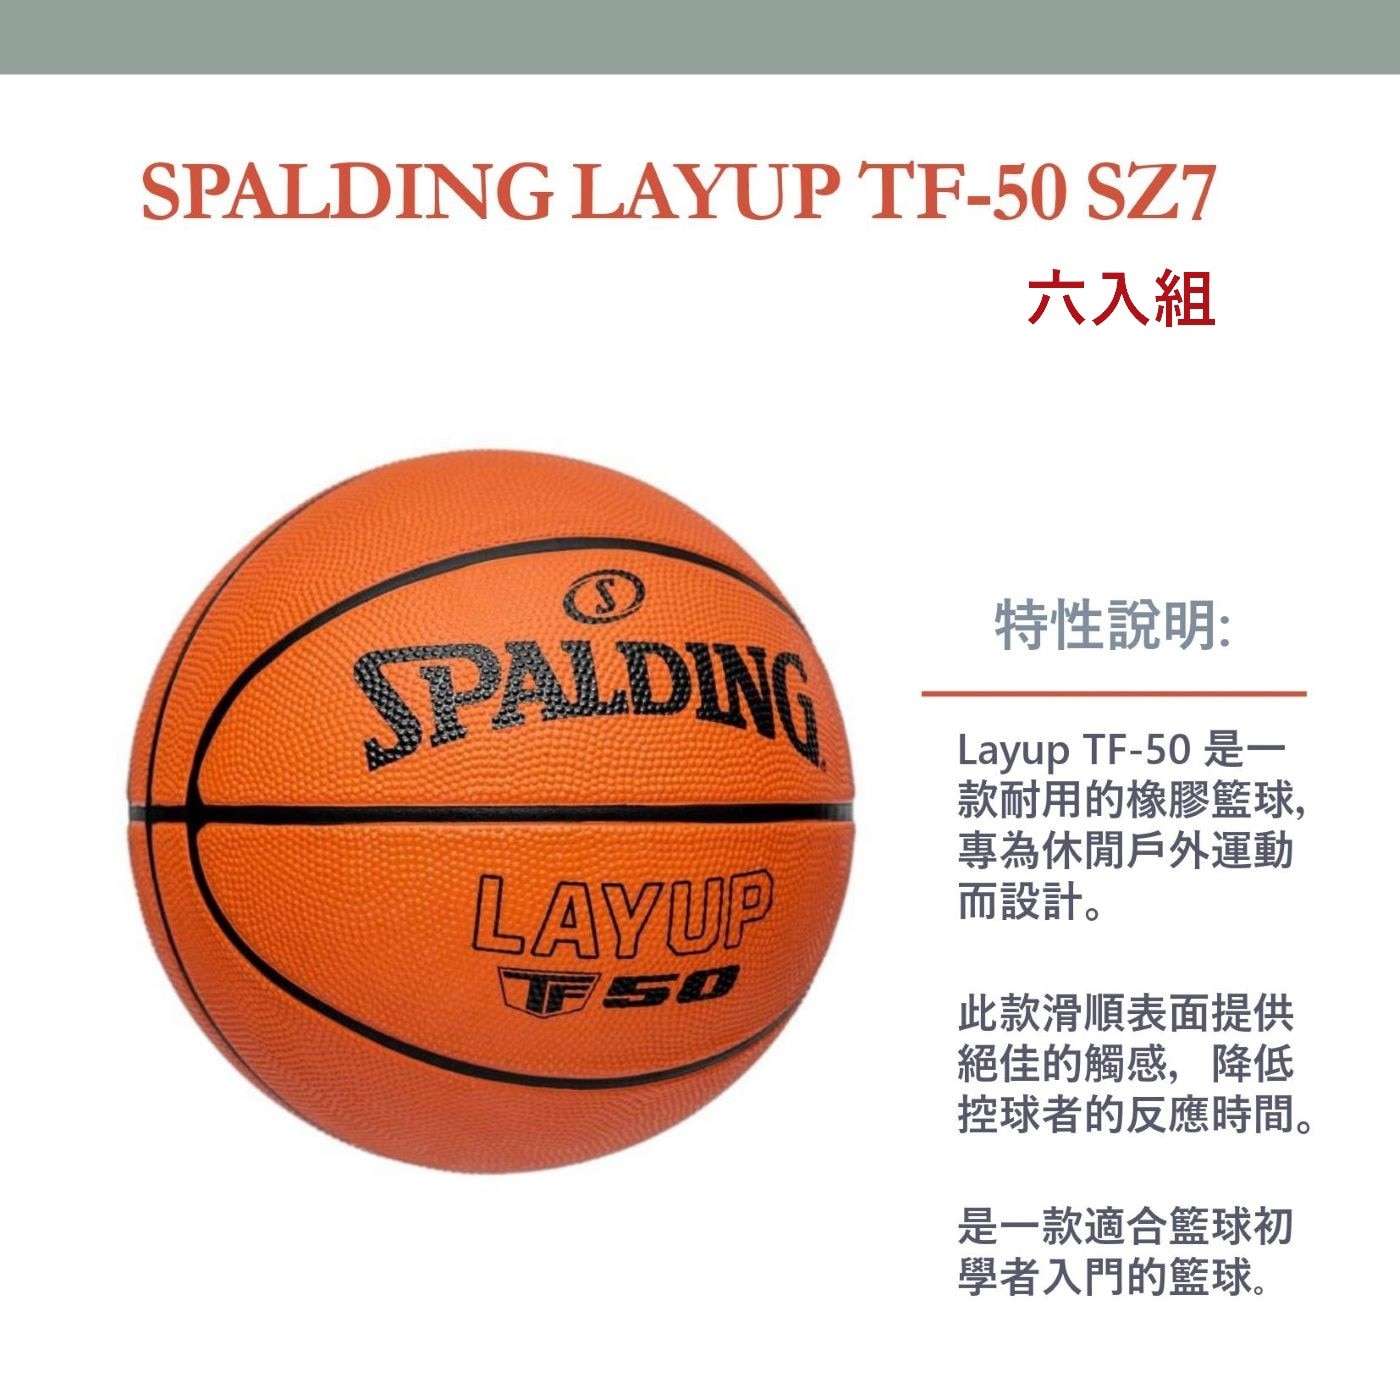 斯伯丁 TF-50 橡膠籃球七號 6入組此款滑順表面提供絕佳觸感降低控球者反應時間